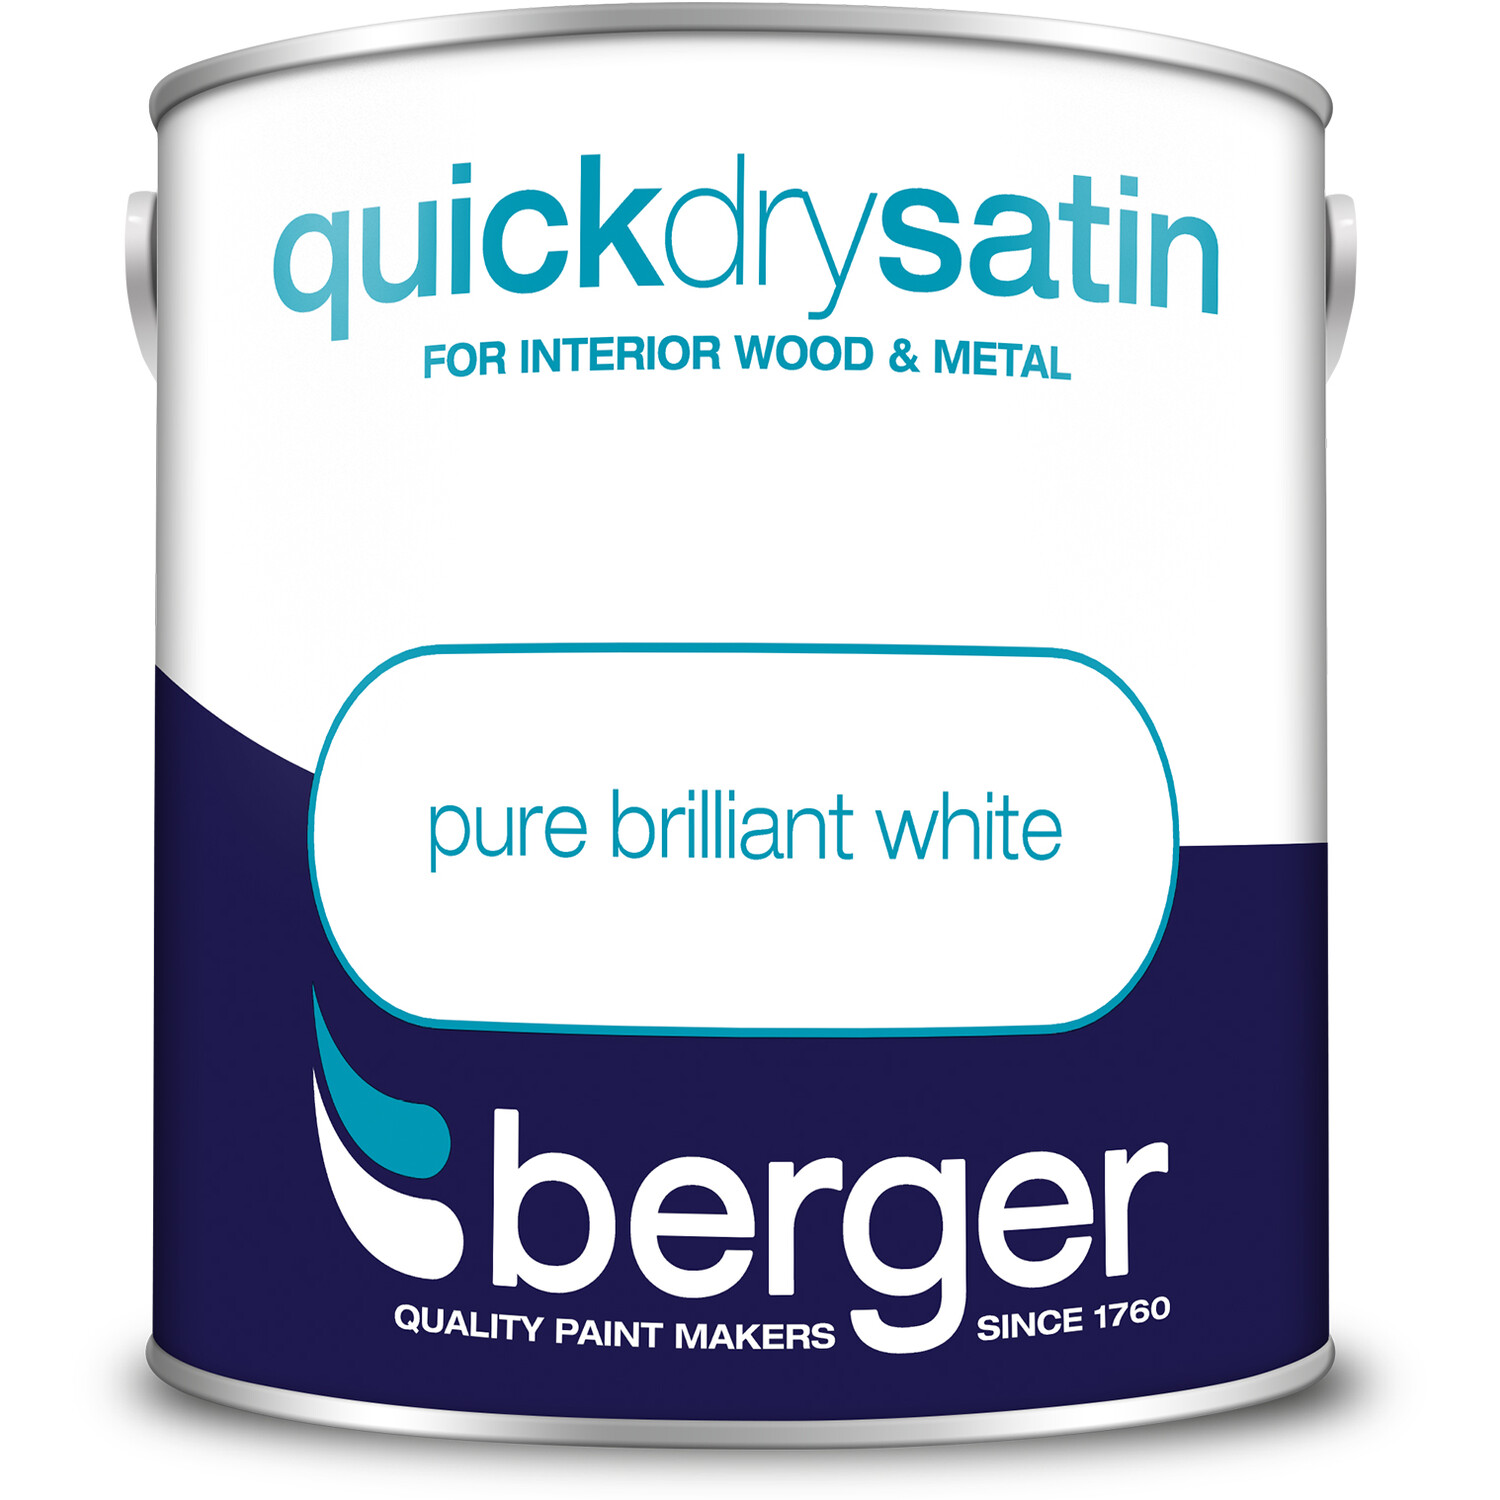 Berger Quick Dry Satin Pure Brilliant White 2.5L - Pure Brilliant White Image 2